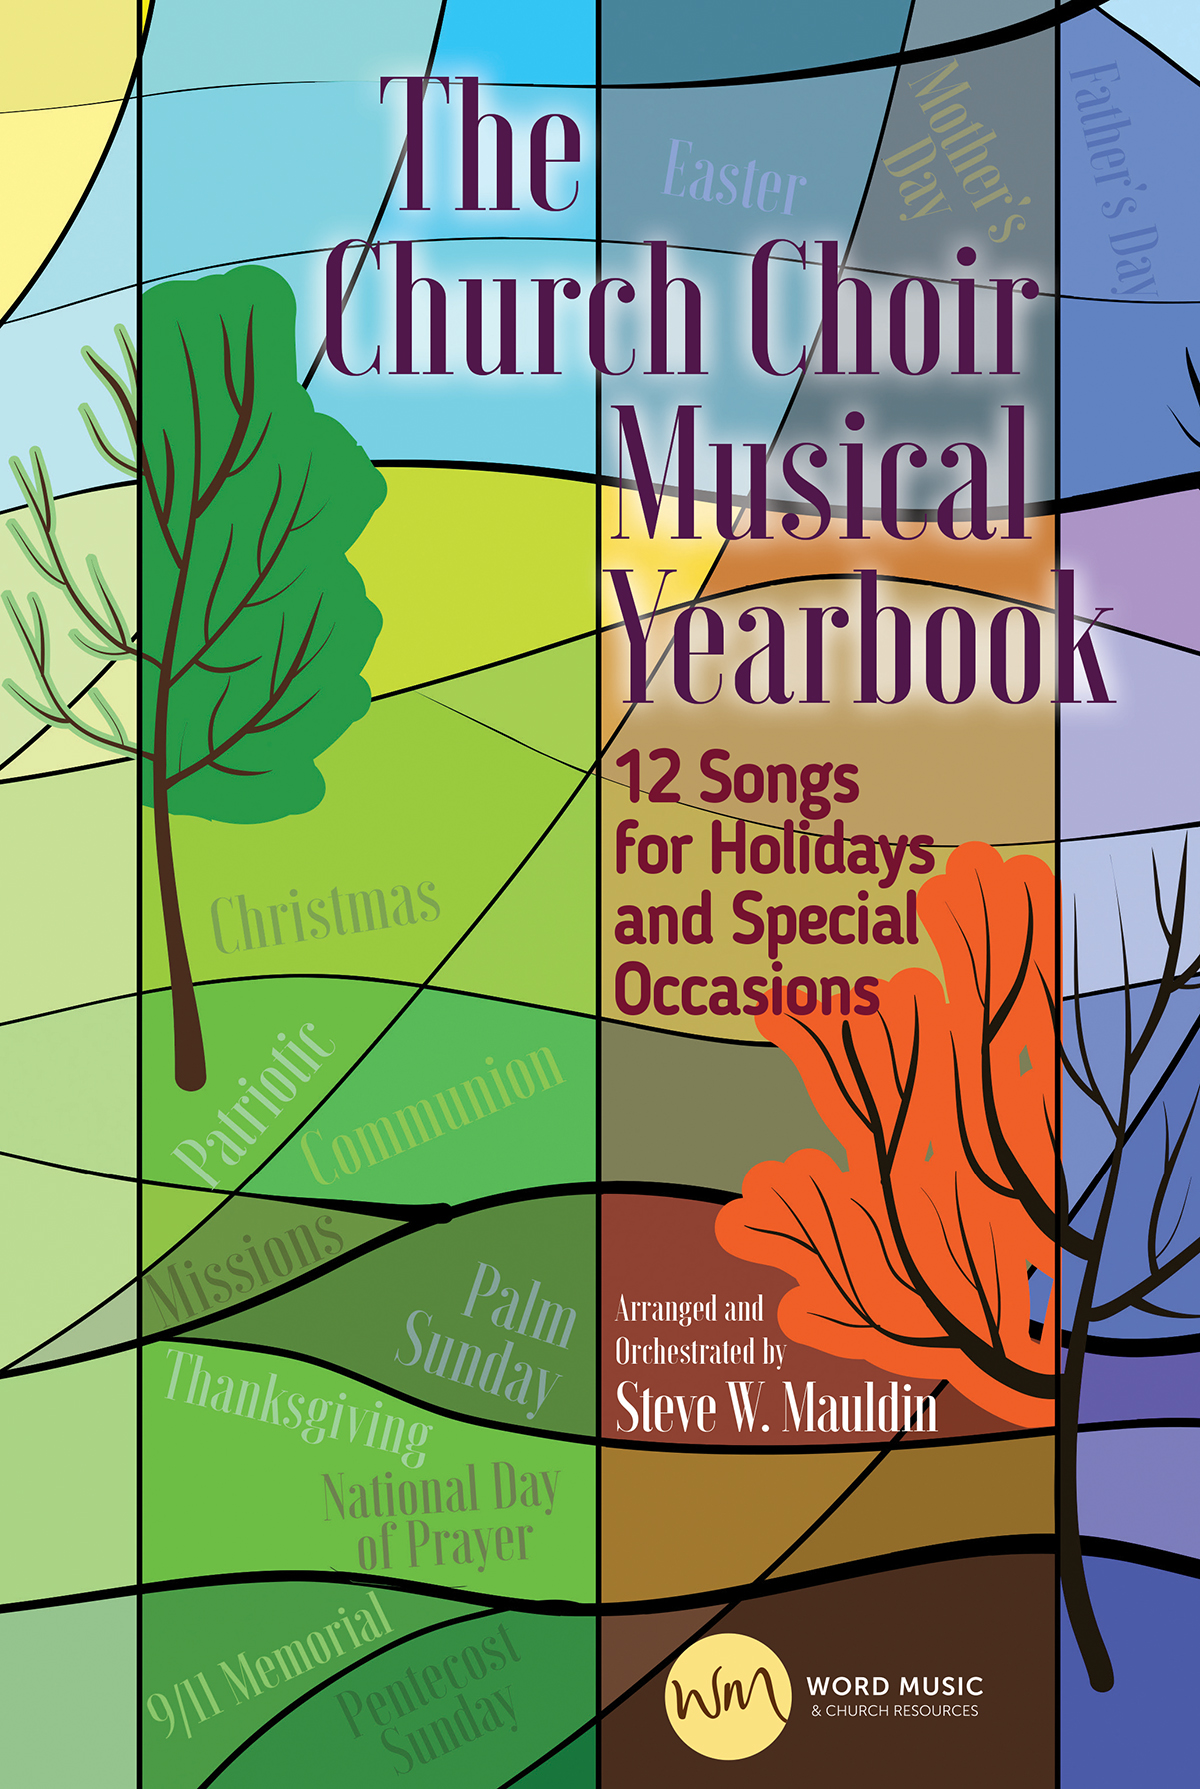 The Church Choir Musical Yearbook